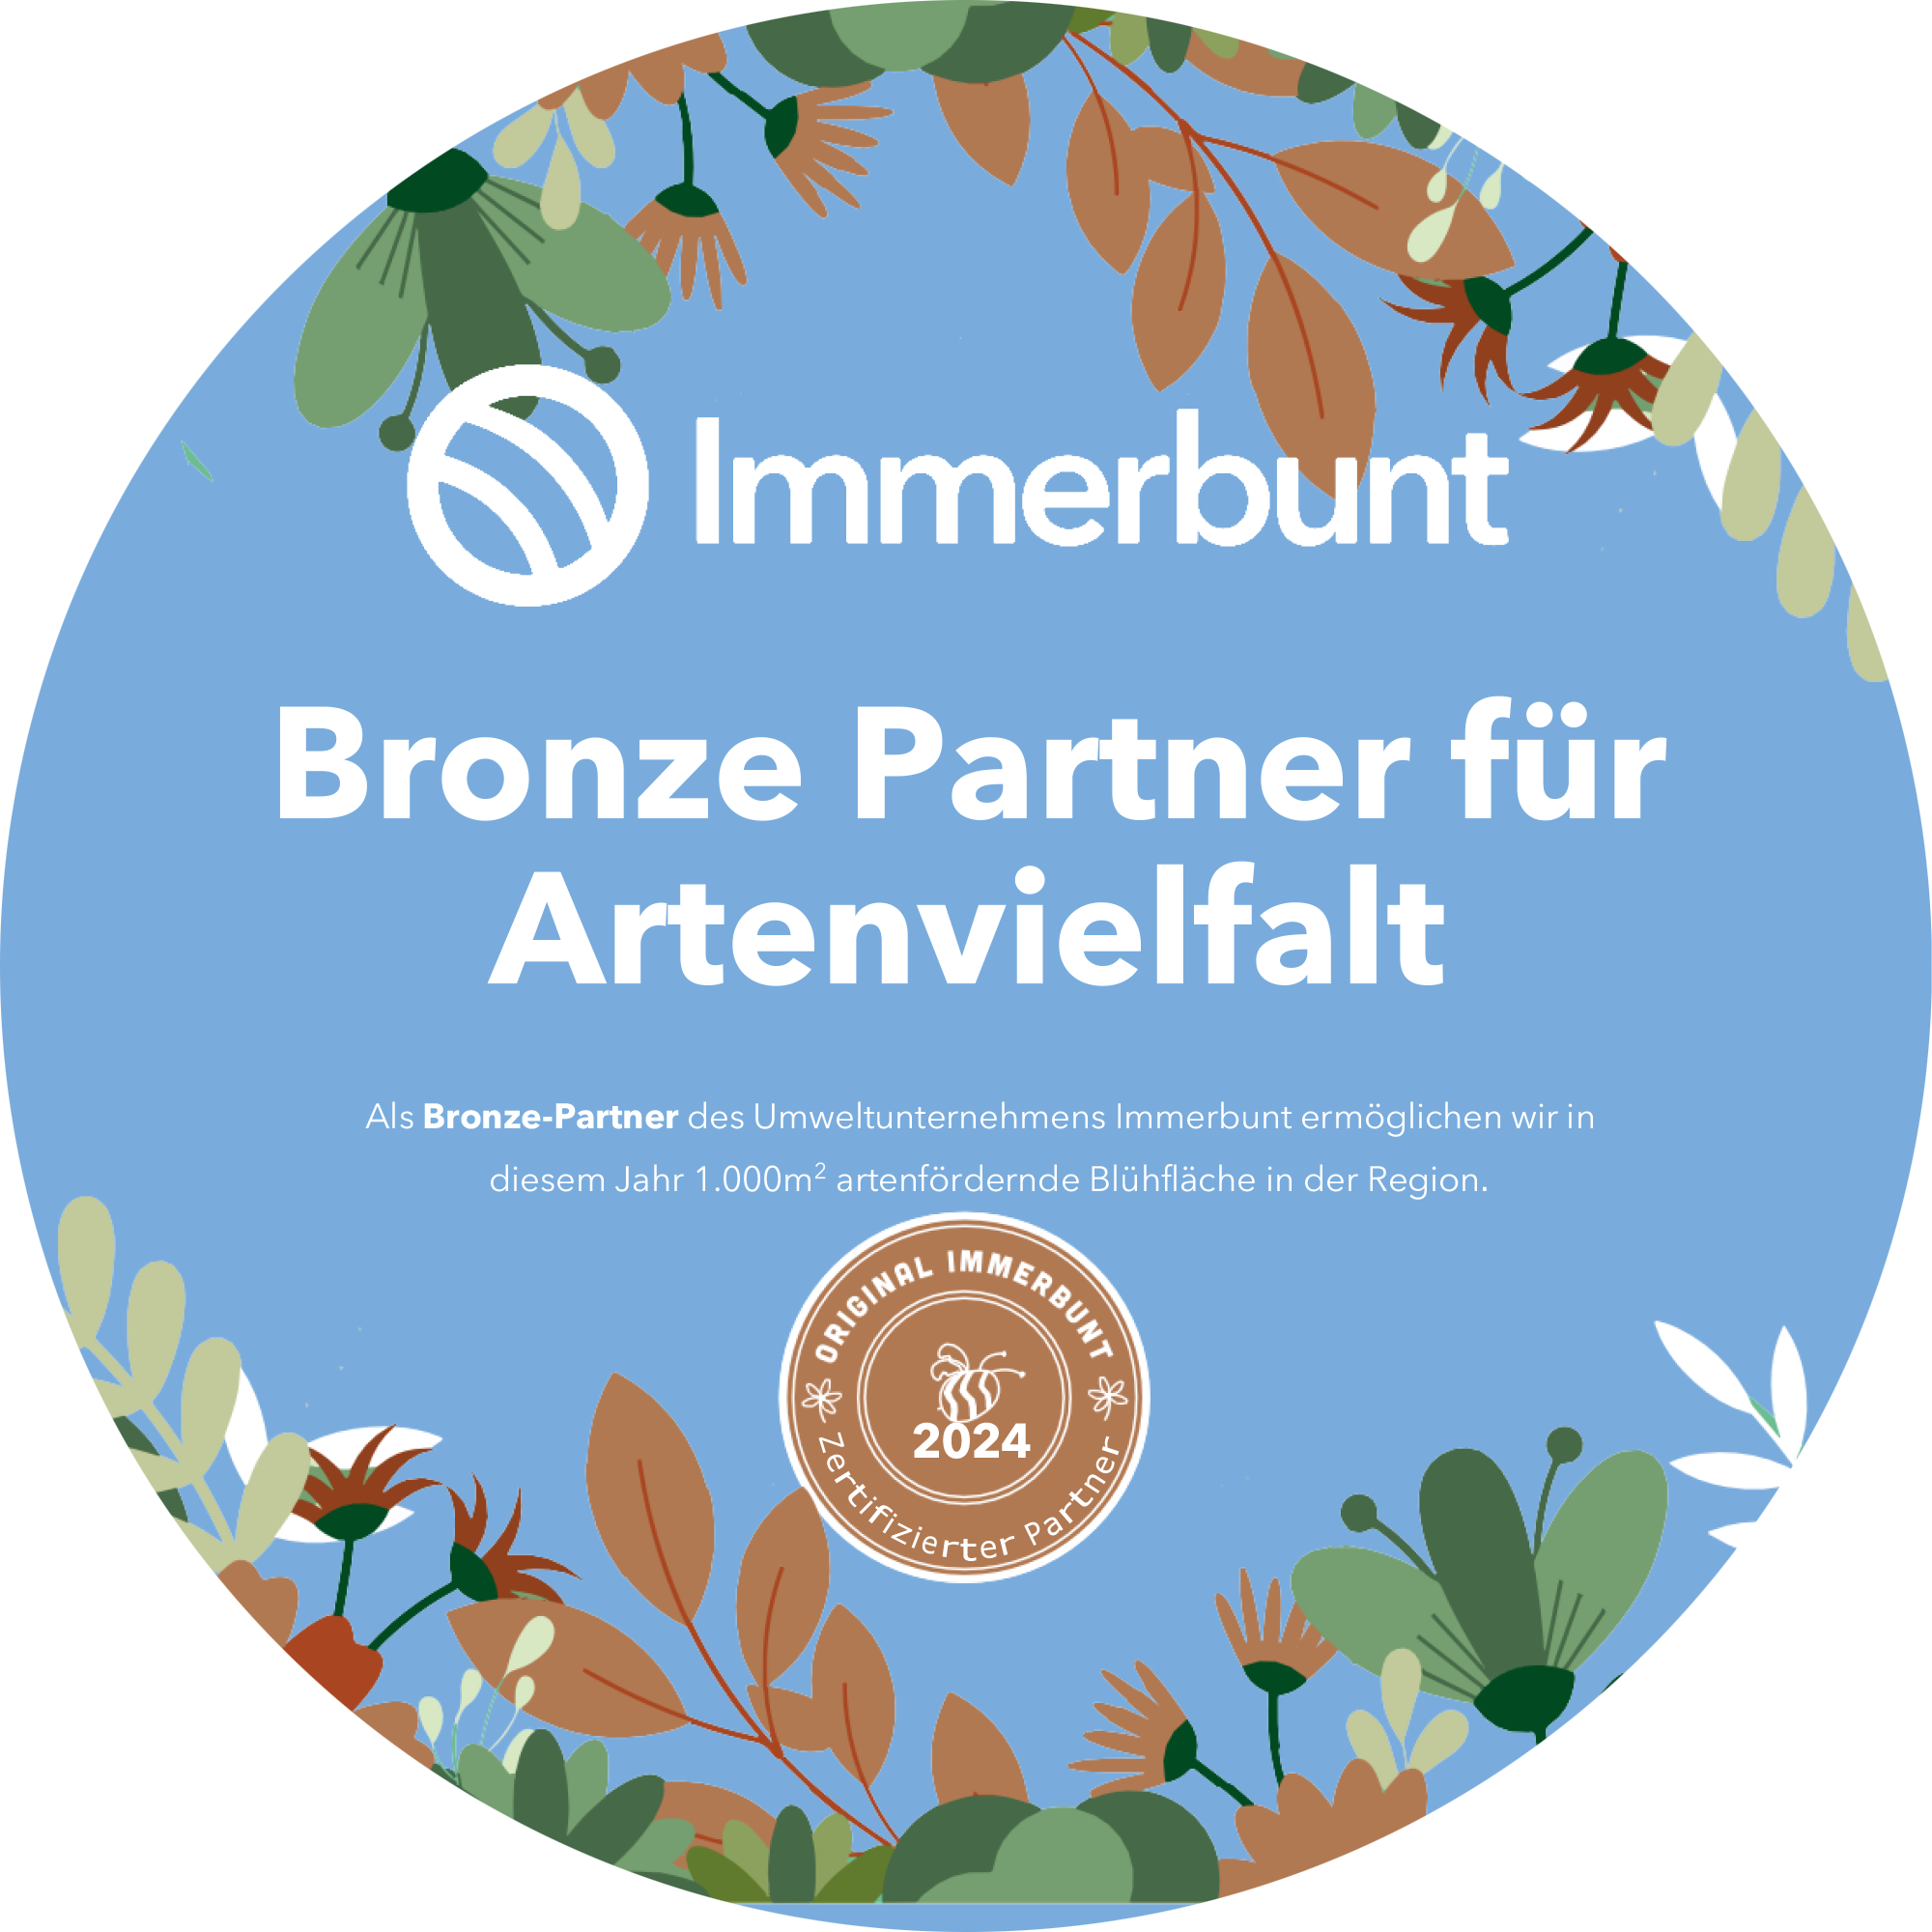 Immerbunt Bronze Partner für Artenvielfalt